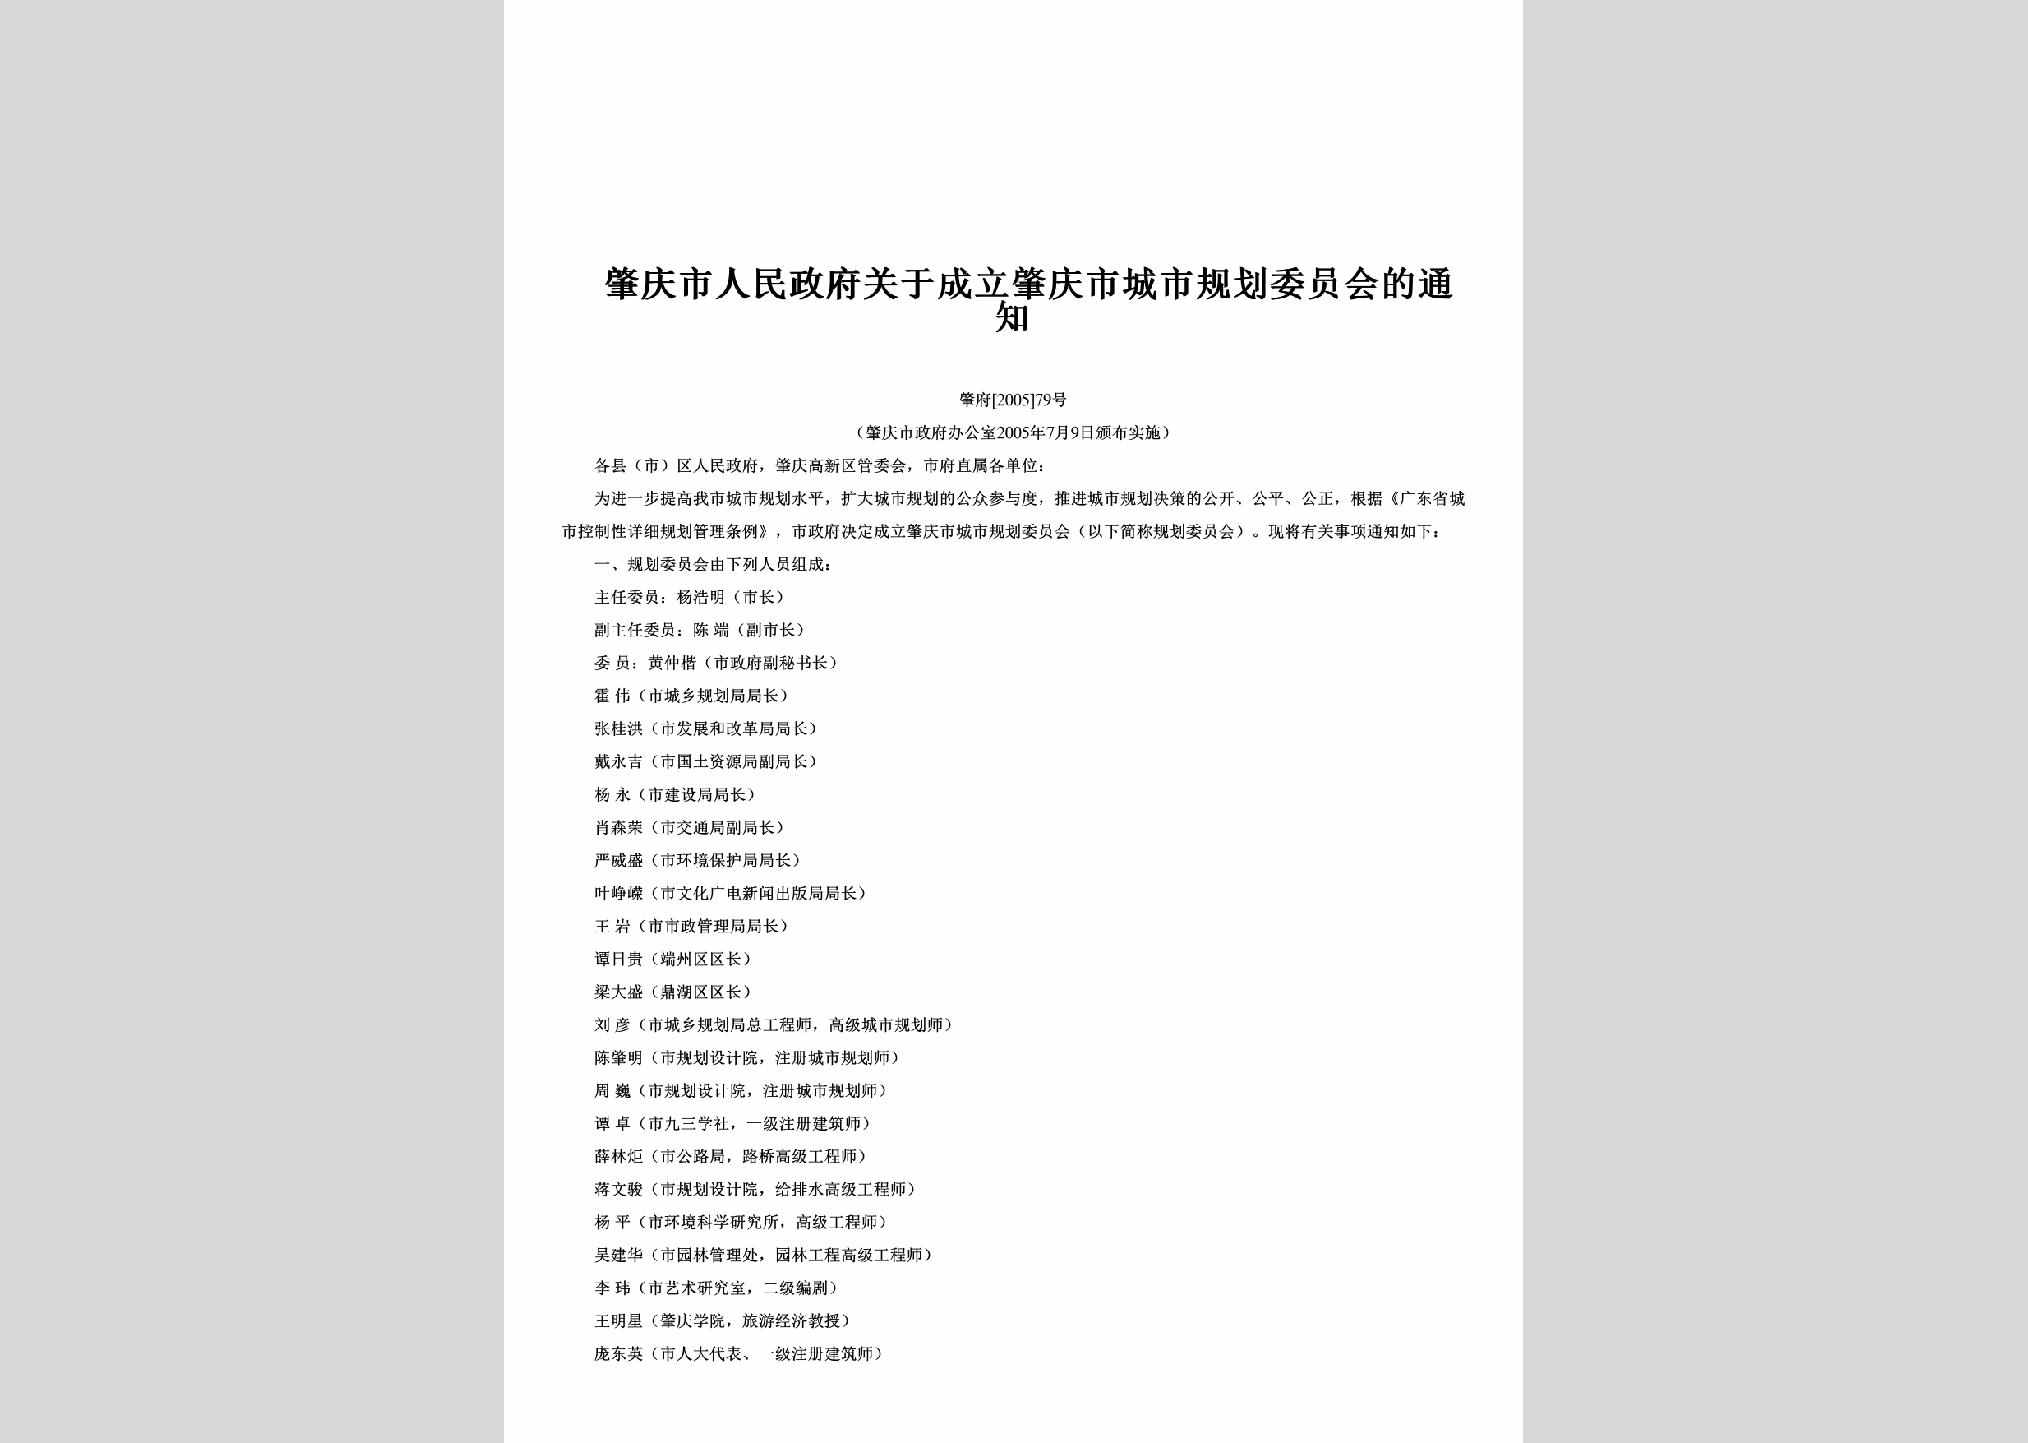 肇府[2005]79号：关于成立肇庆市城市规划委员会的通知